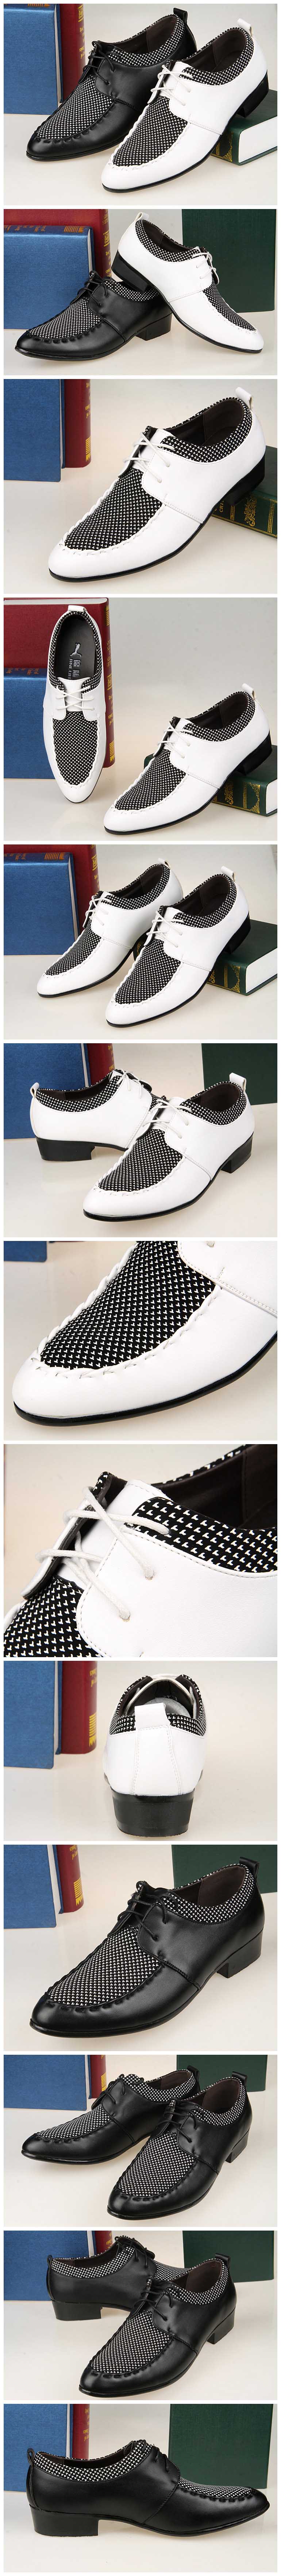 jual sepatu kerja pria terbaru model korea, belanja online sepatu kerja pria hanya di store.pakaianfashionpria.com